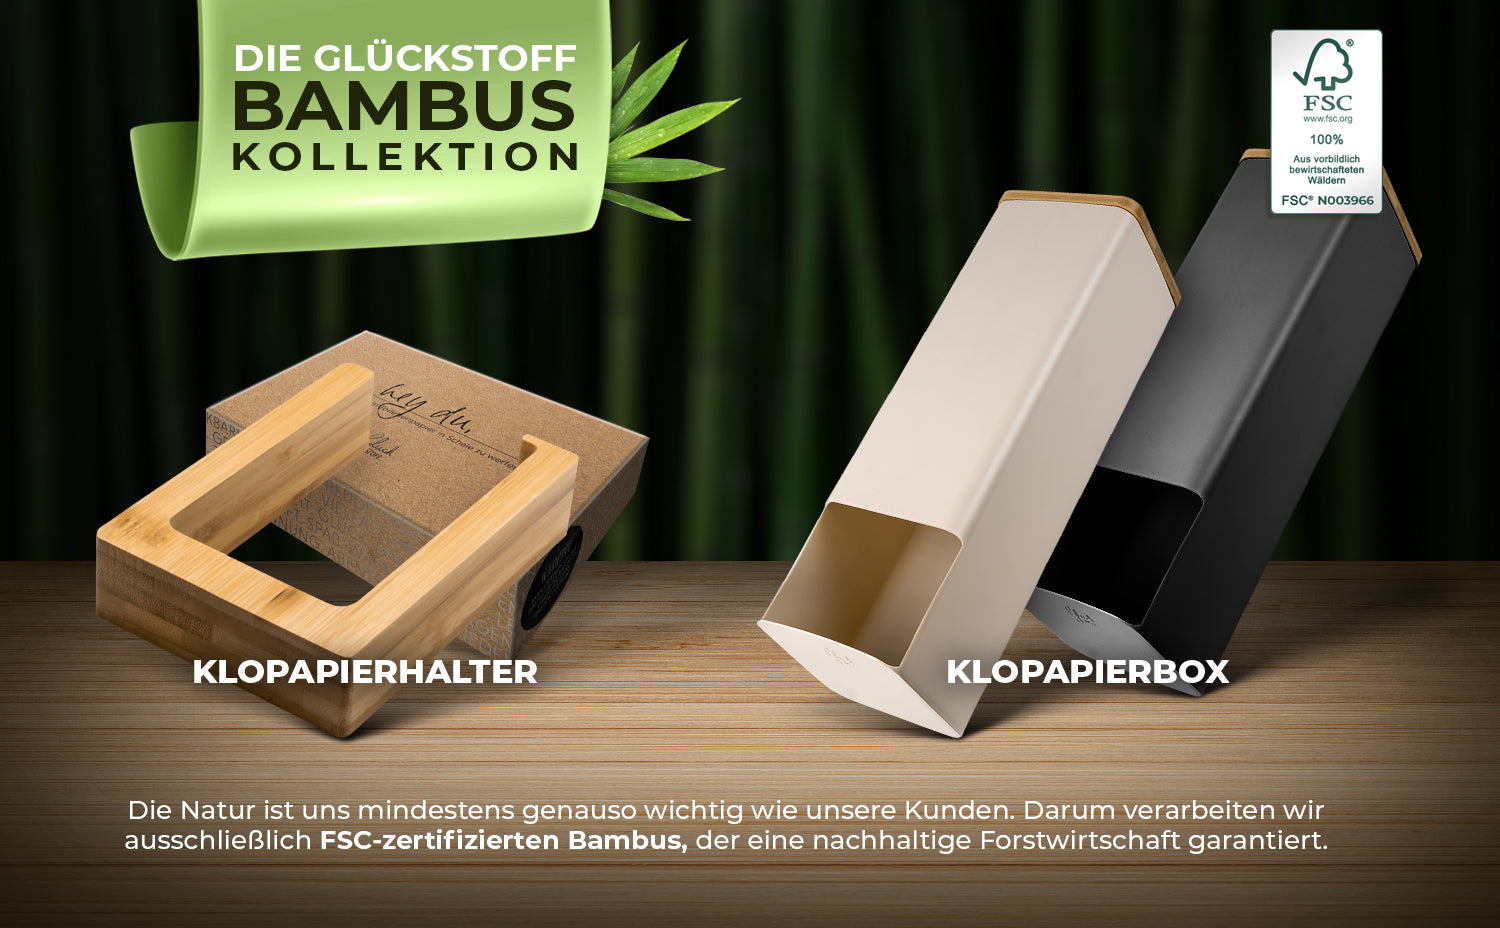 Portarrollos de papel higiénico fabricado en bambú certificado FSC (sin taladrar)